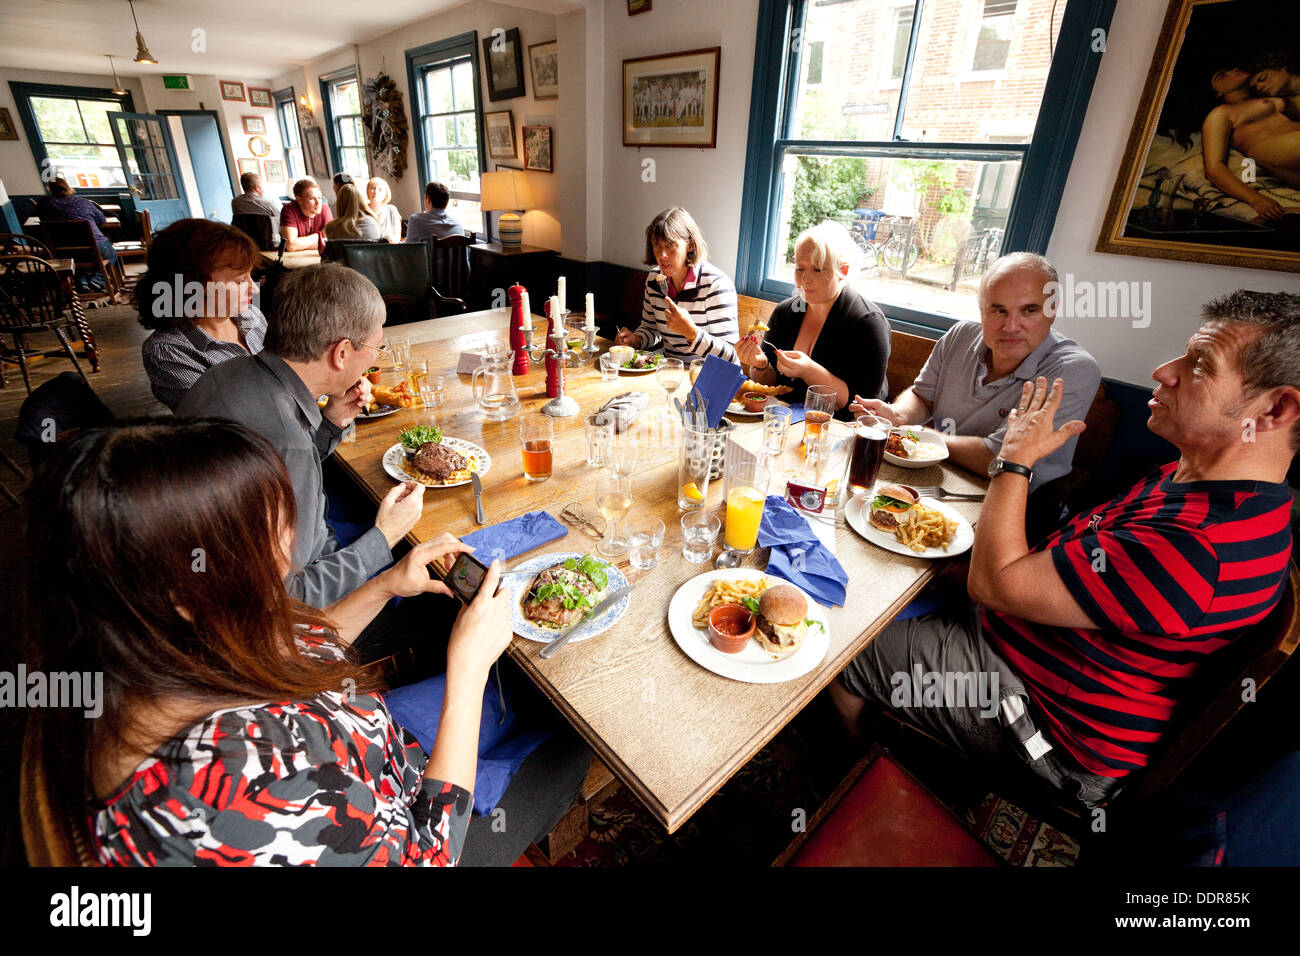 Groupe de personnes ayant un repas dans un pub, le parieur Pub, South St, Oxford, Oxfordshire, UK Banque D'Images